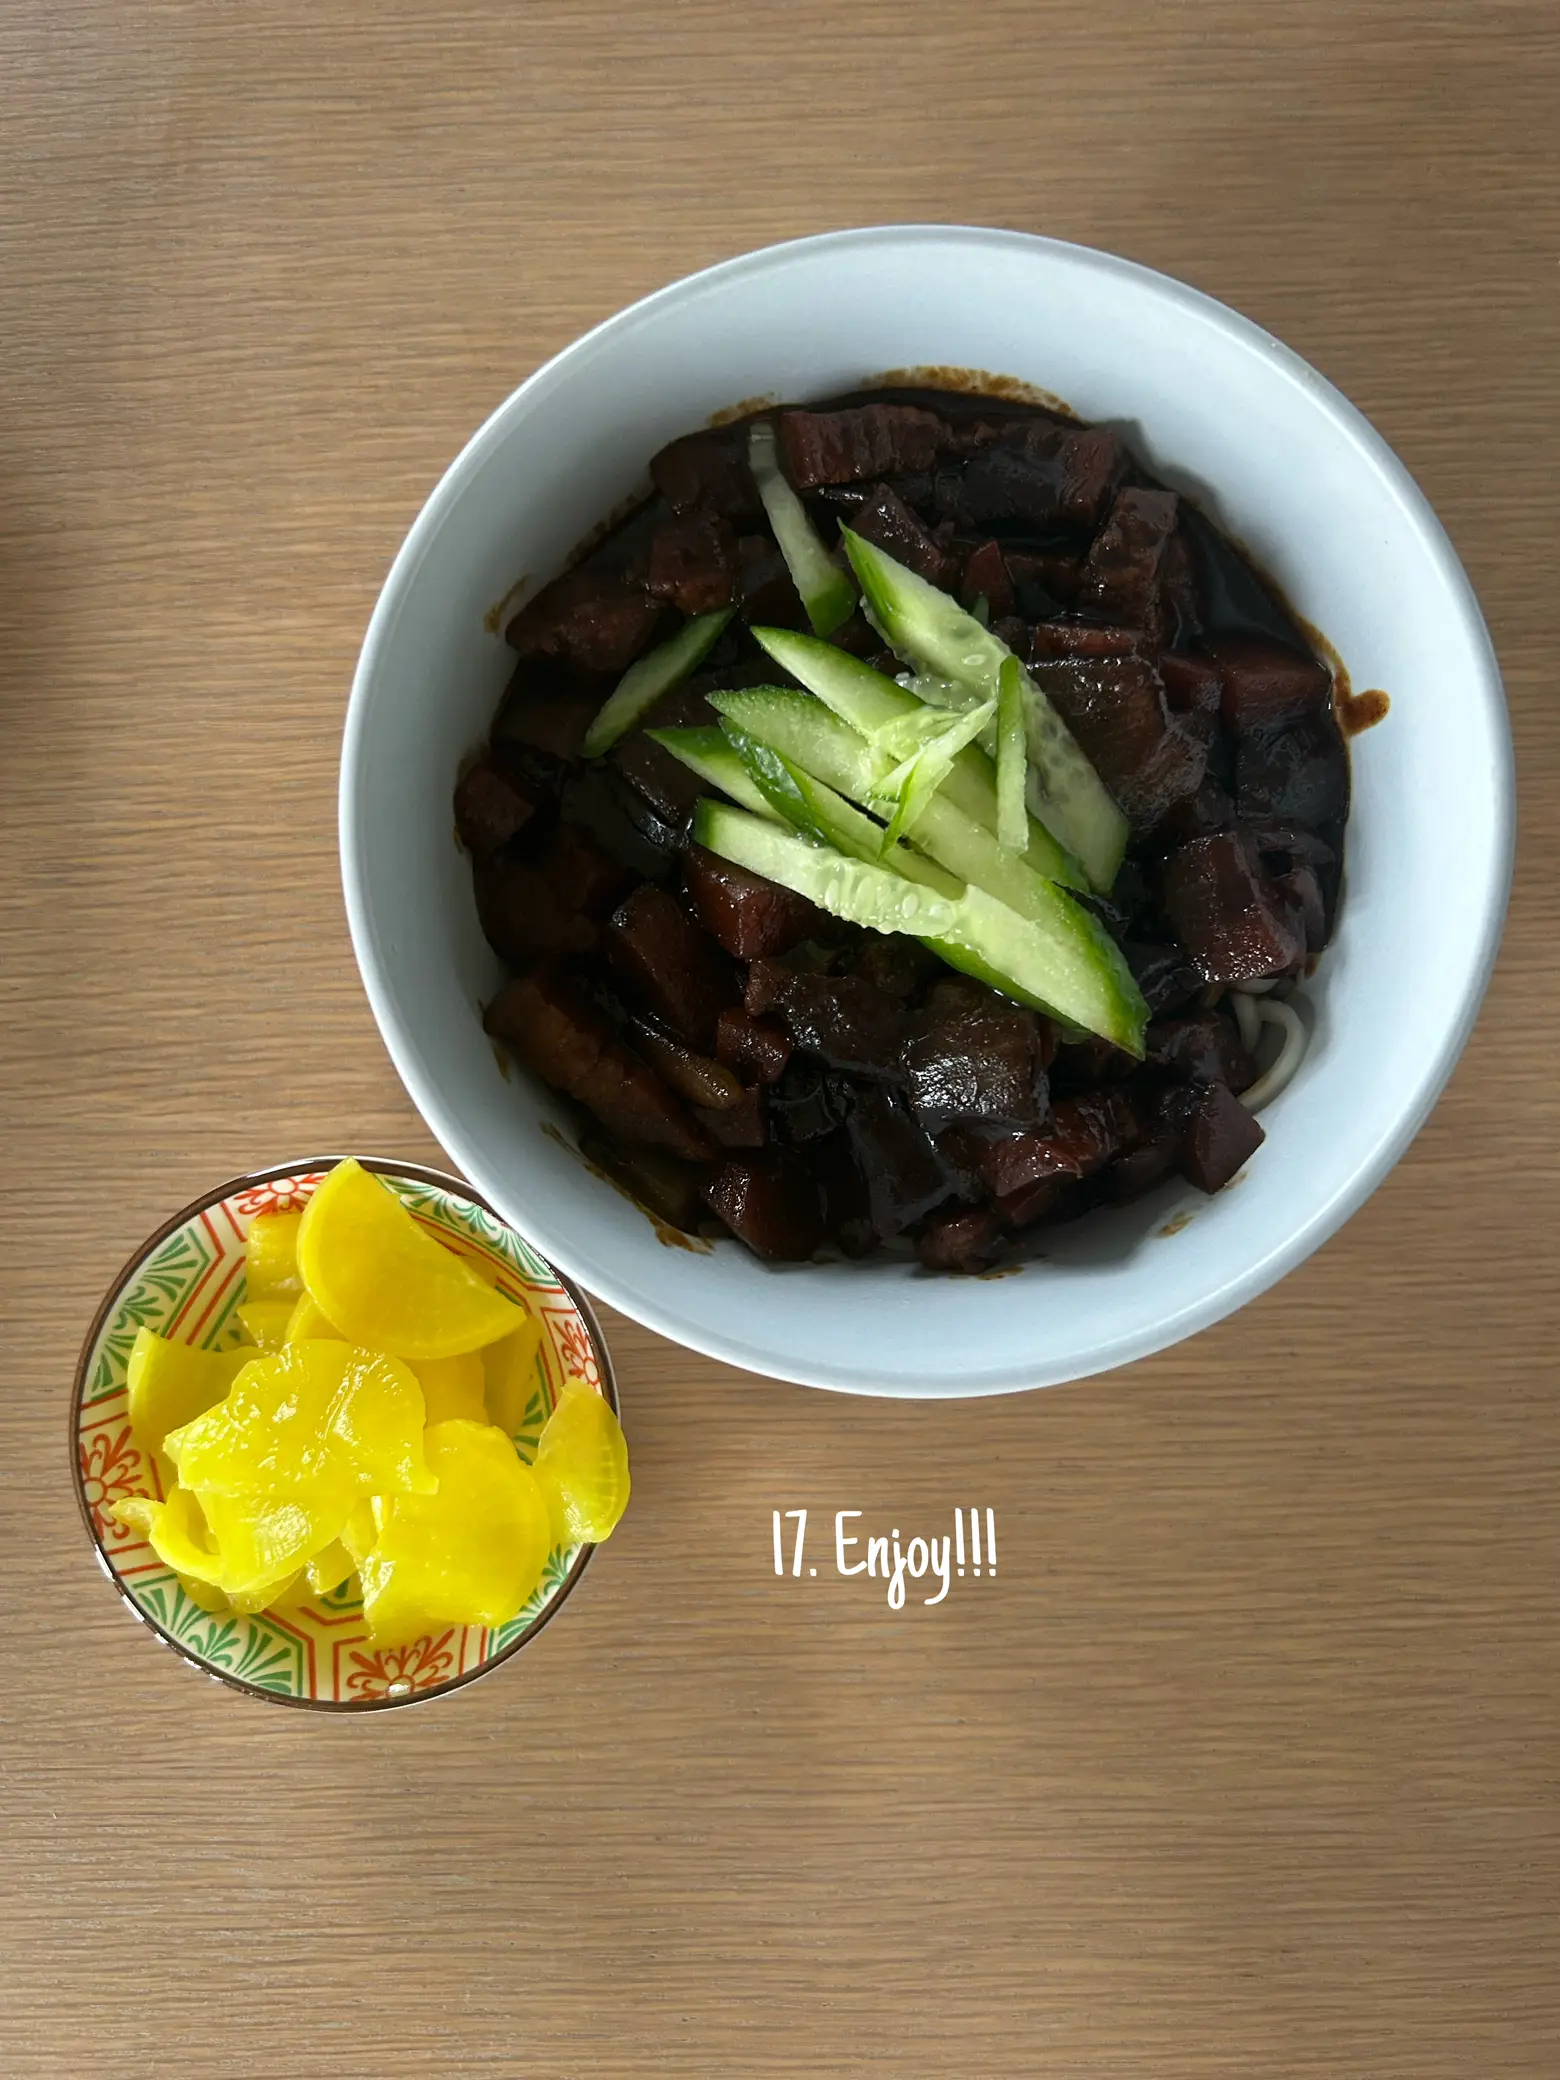 Oyster sauce - Maangchi's Korean cooking ingredients